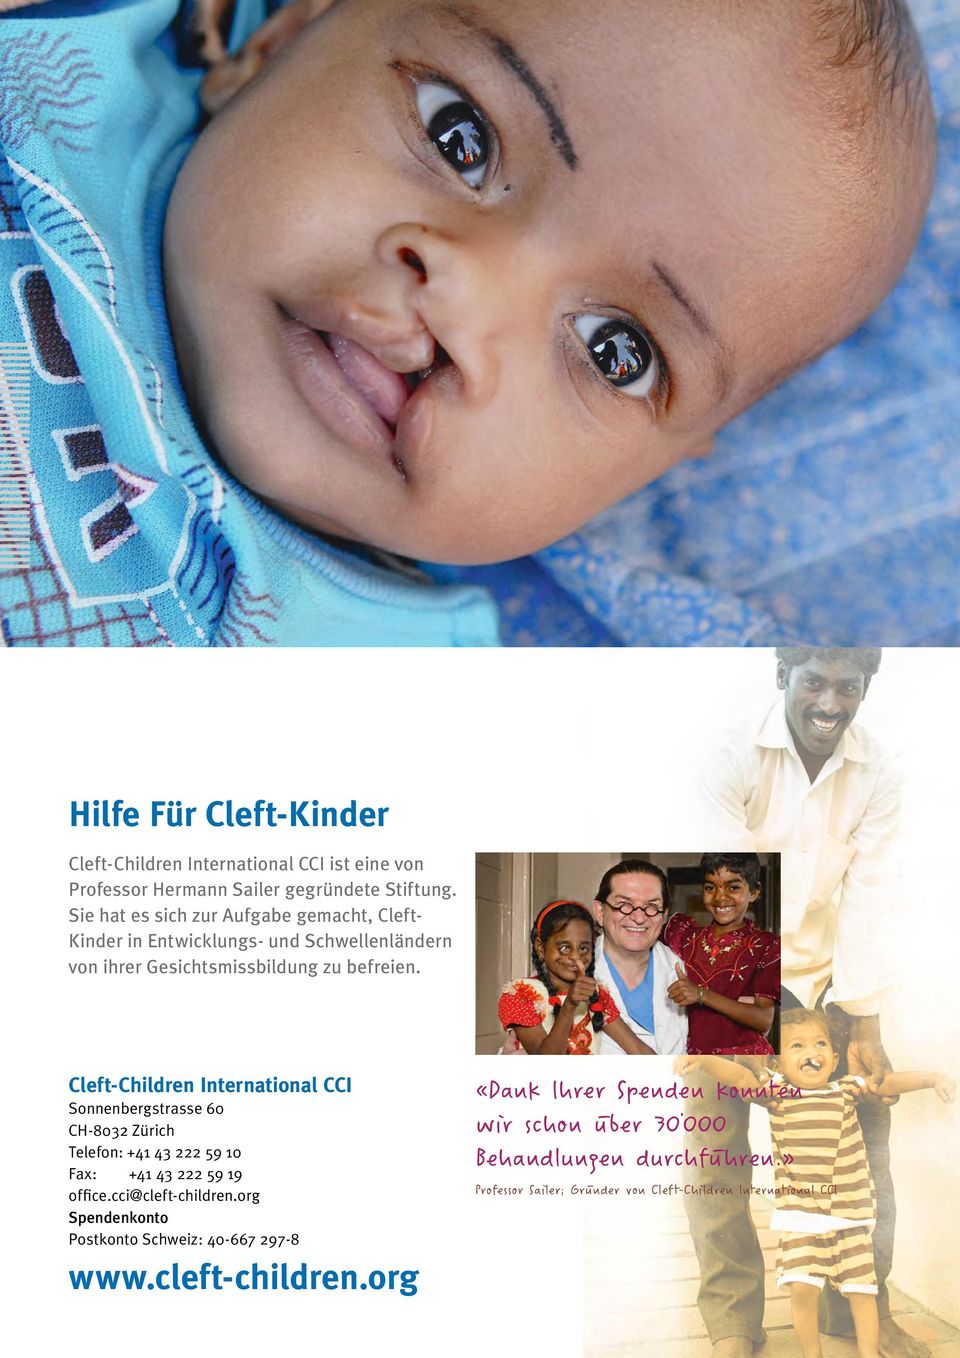 Cleft-Children International CCI Sonnenbergstrasse 60 CH-8032 Zürich Telefon: +41 43 222 59 10 Fax: +41 43 222 59 19 office.cci@cleft-children.